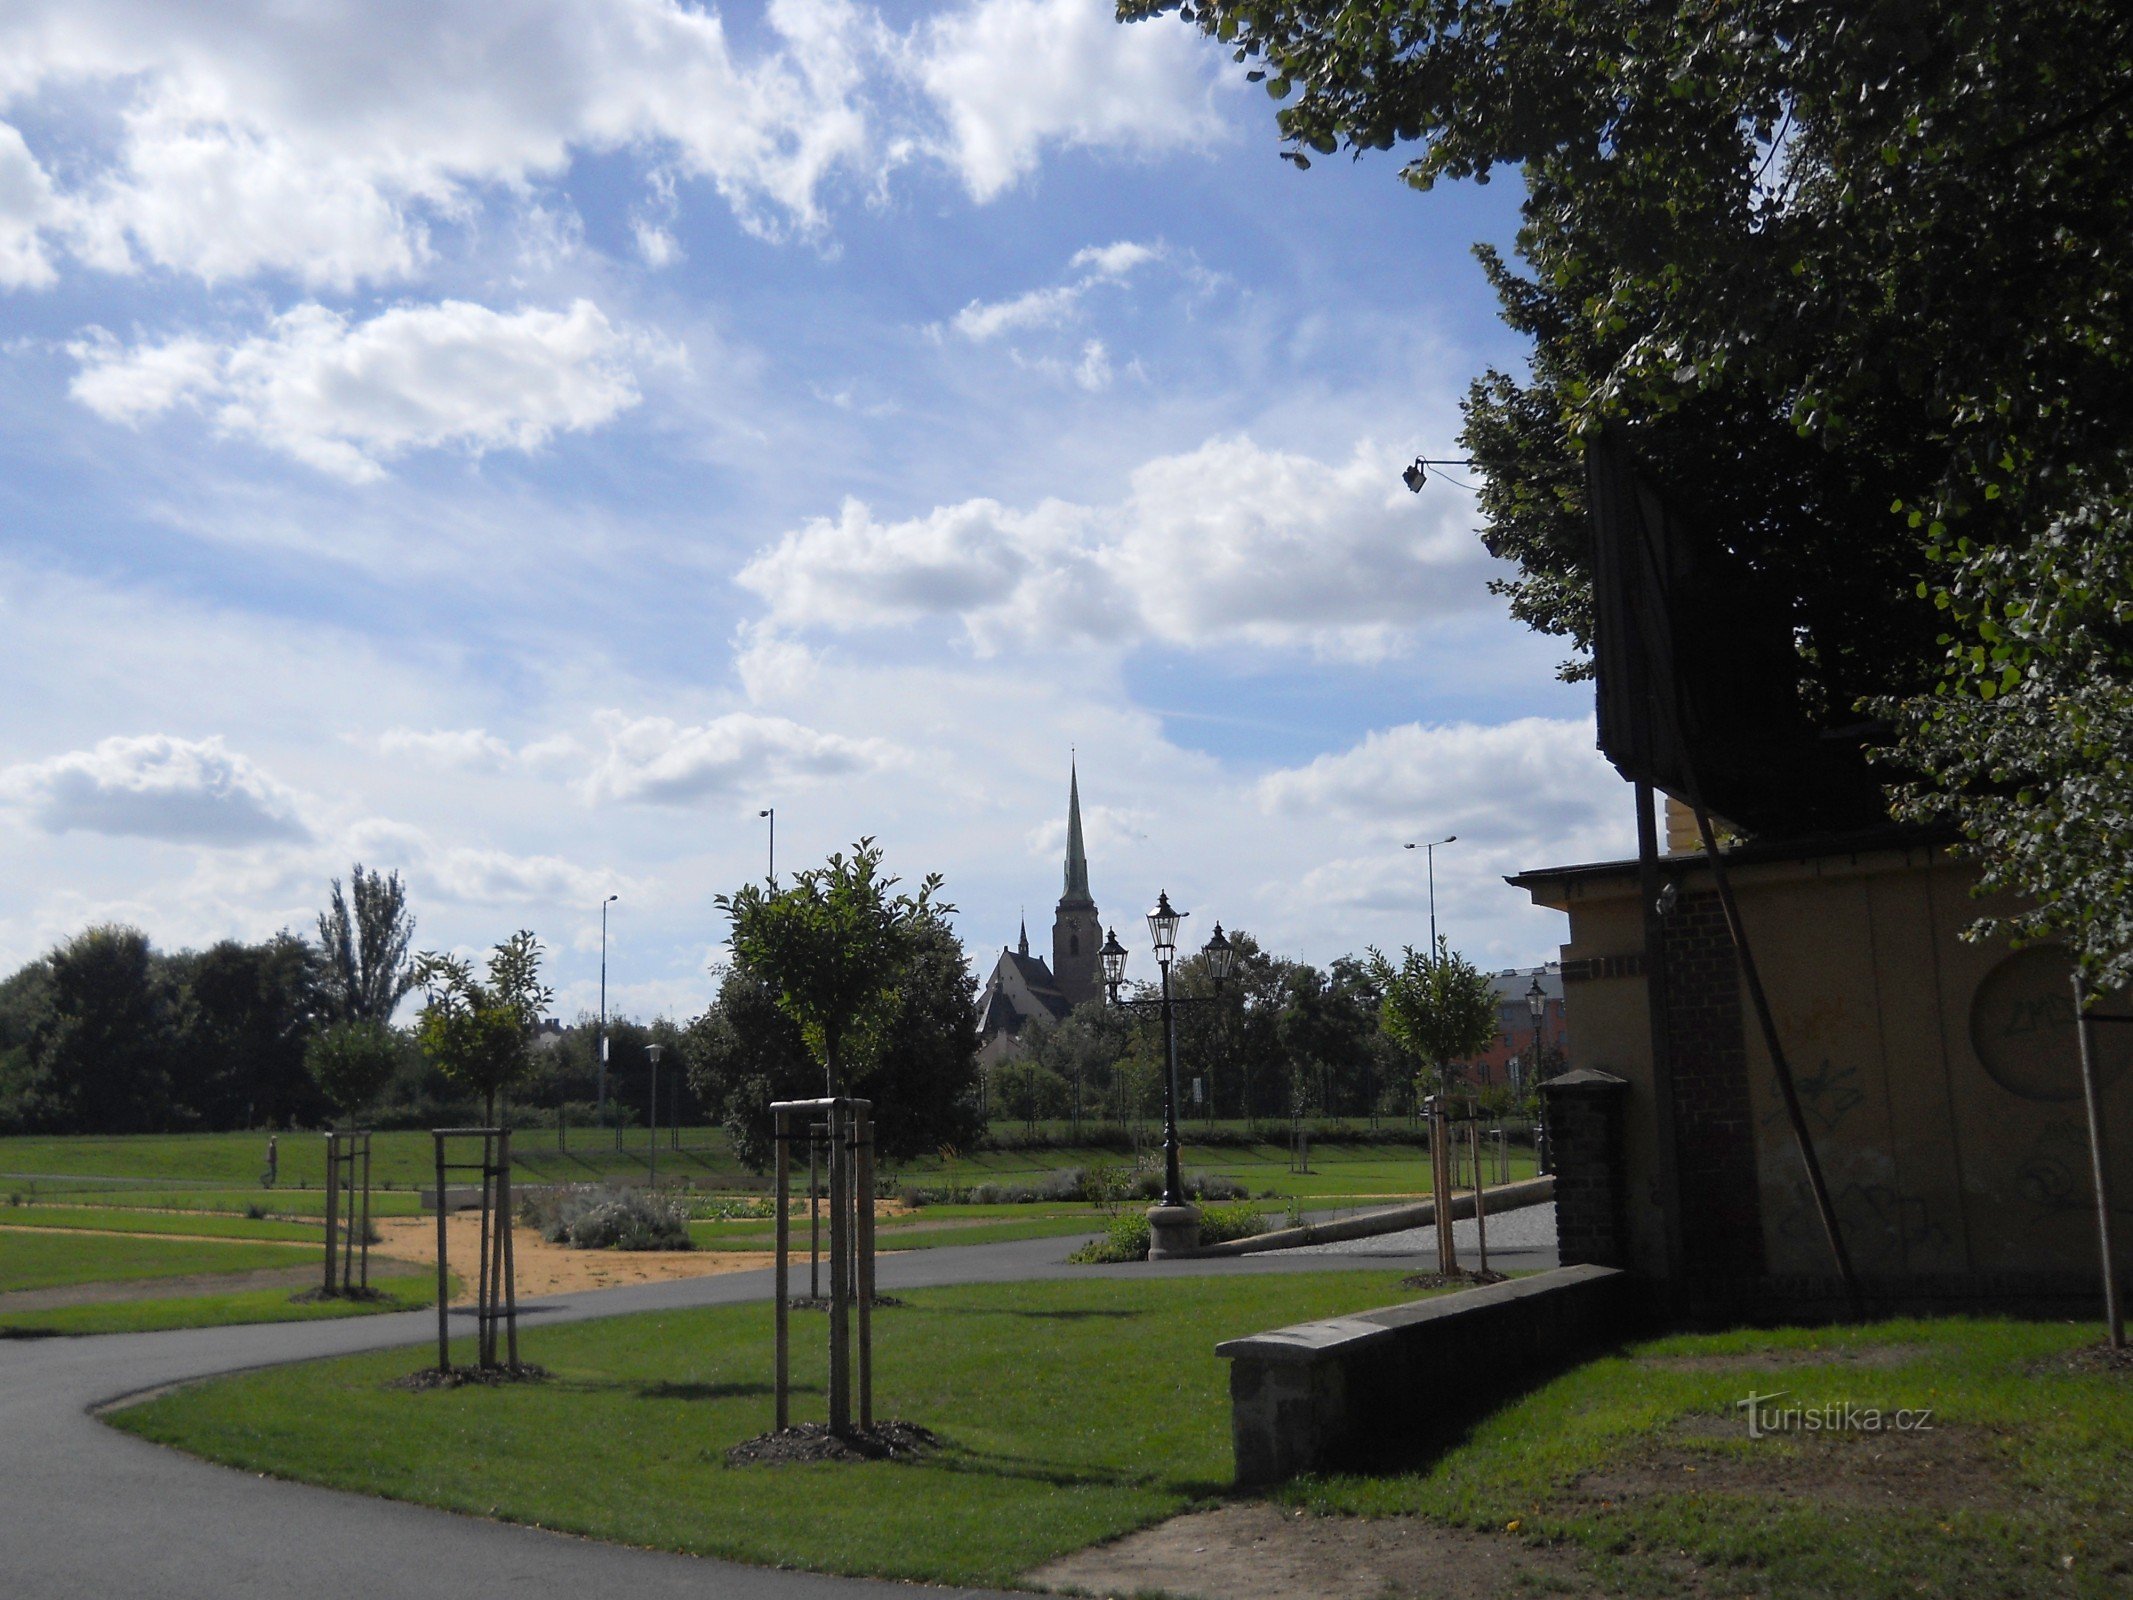 Вход в парк с видом на Пльзеньский собор св. Варфоломей